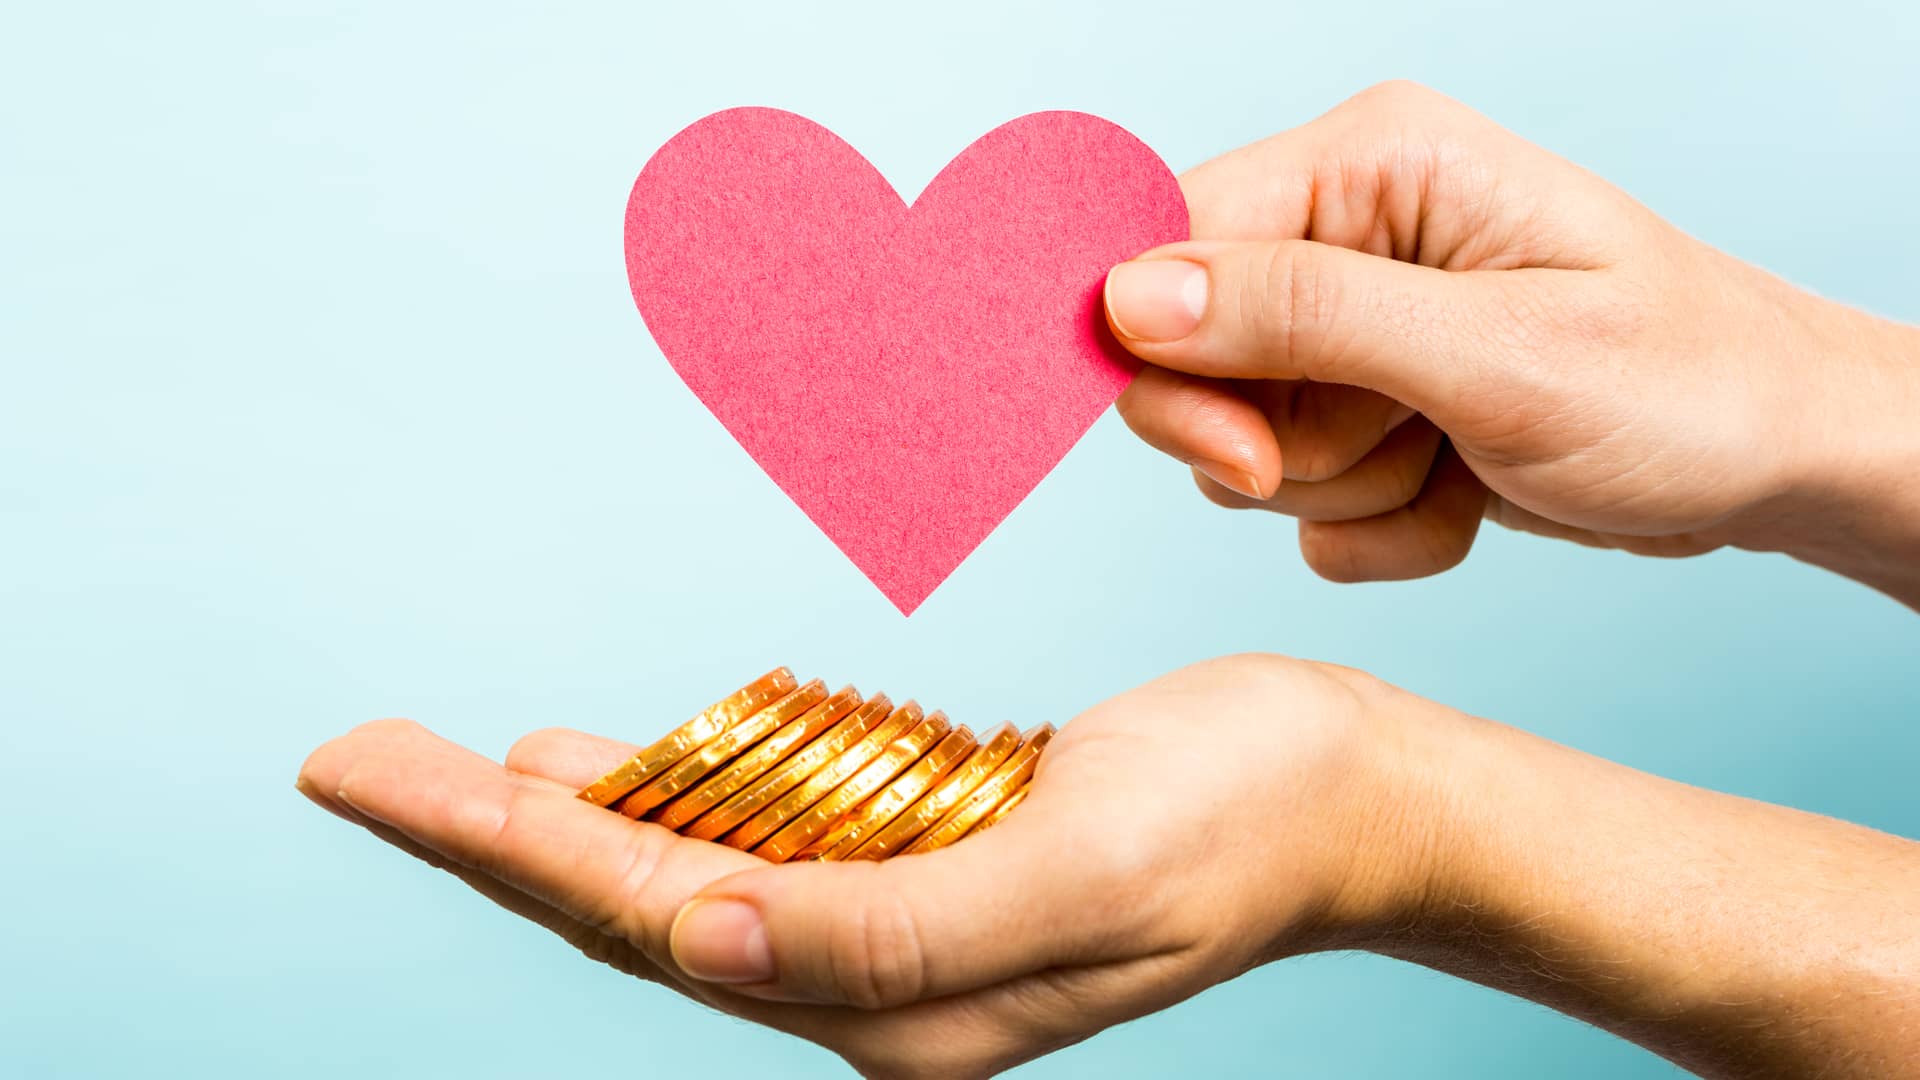 Persona con mano extendida ofreciendo monedas de chocolate mientras sostiene la silueta de un corazón de cartulina símboliza el crowdfunding de donación